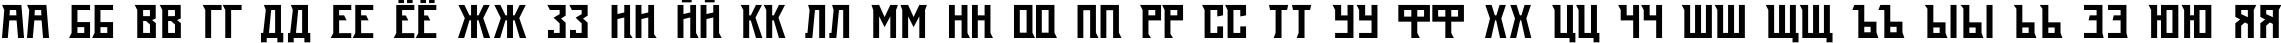 Пример написания русского алфавита шрифтом Radiys TYGRA